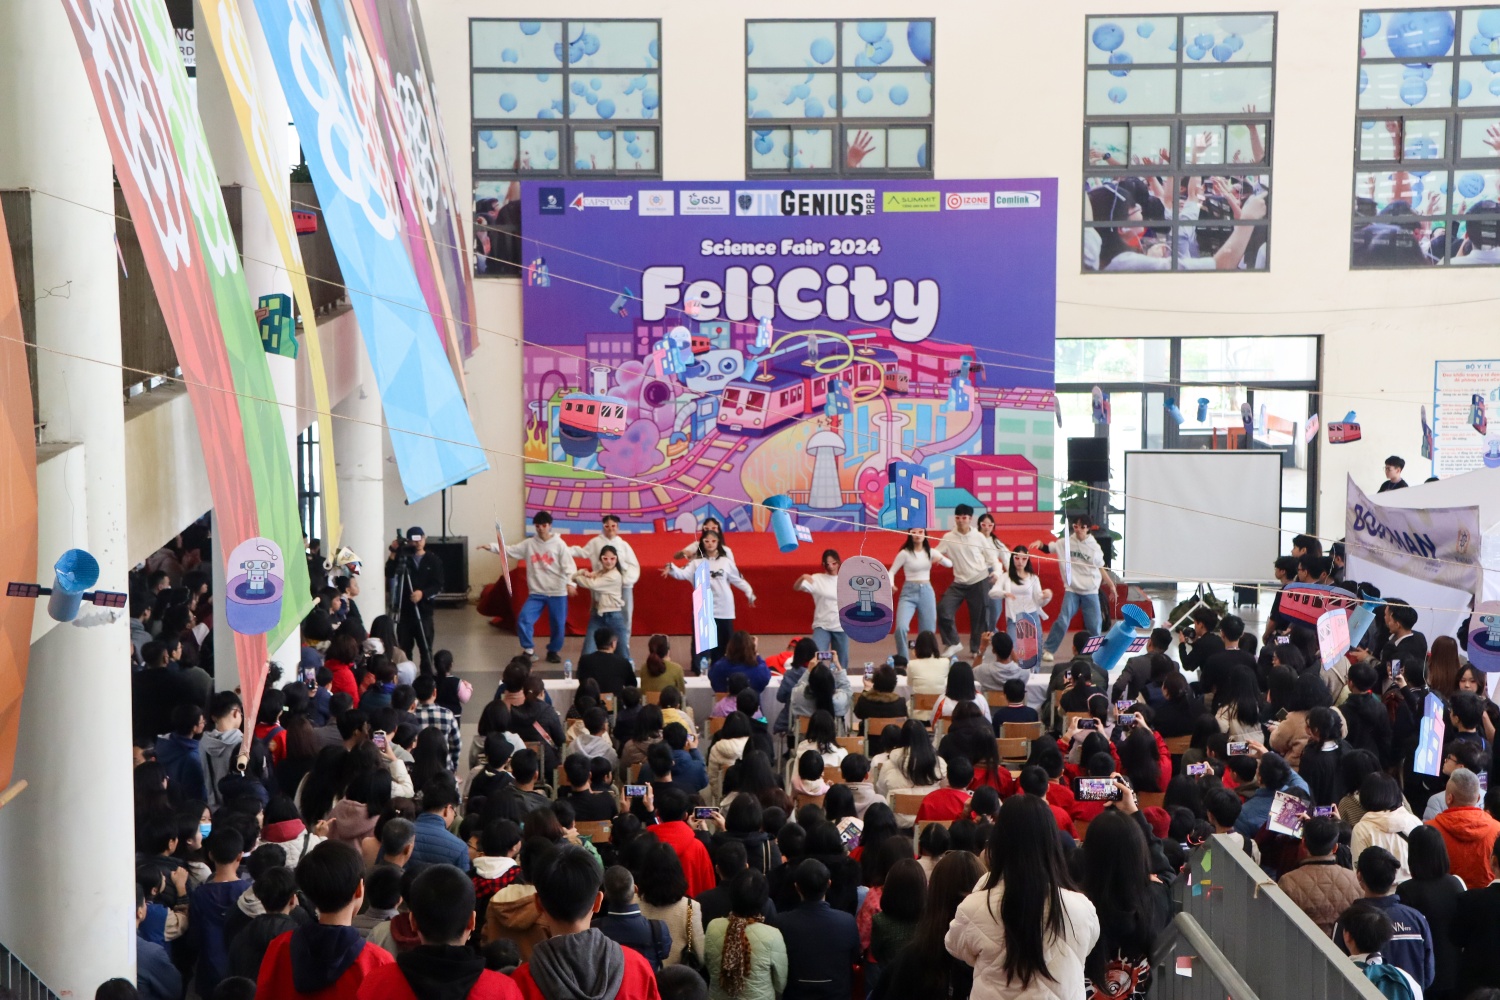 Hơn 4.000 người tham gia hội chợ khoa học phi lợi nhuận do học sinh Hà Nội tổ chức